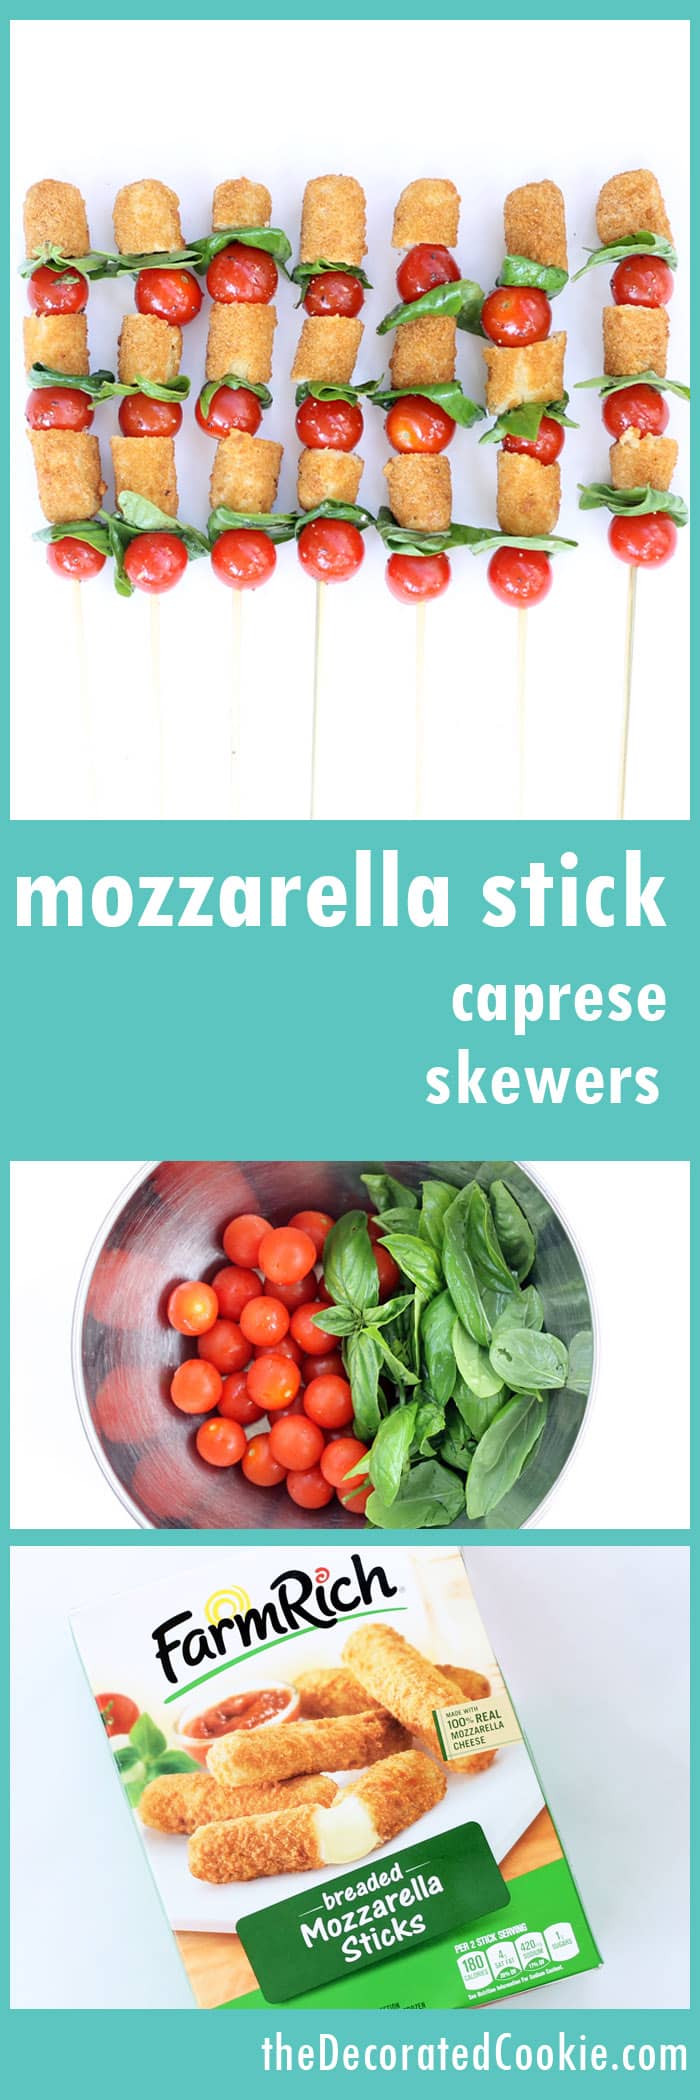 mozzarella stick caprese skewers - tomato, basil and Farm Rich mozzarella sticks 